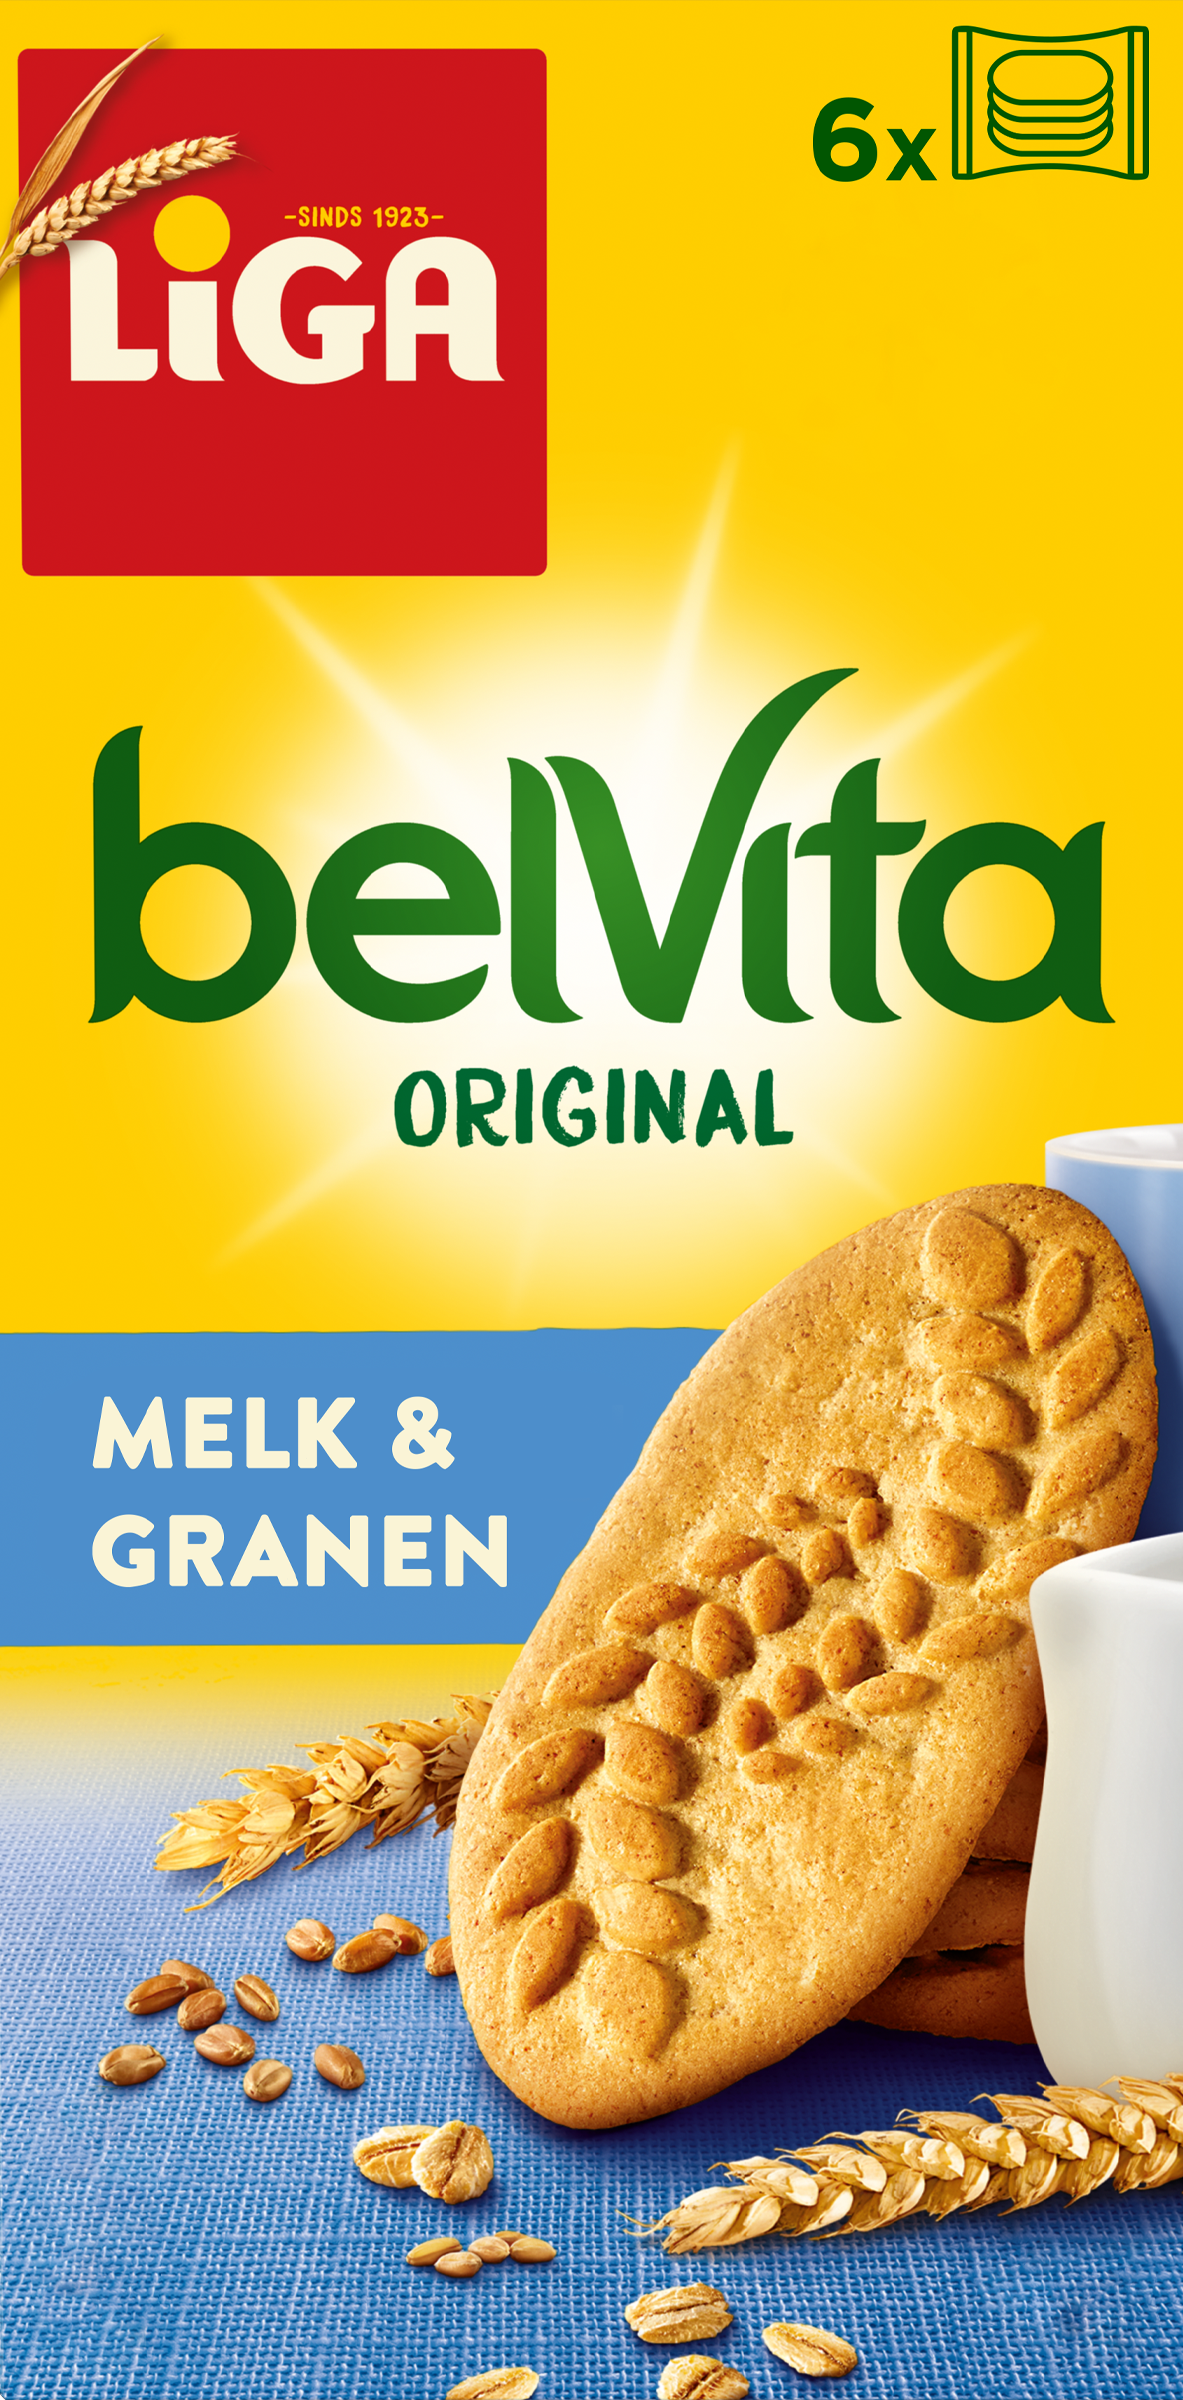 LiGA belVita Plain Melk & Granen